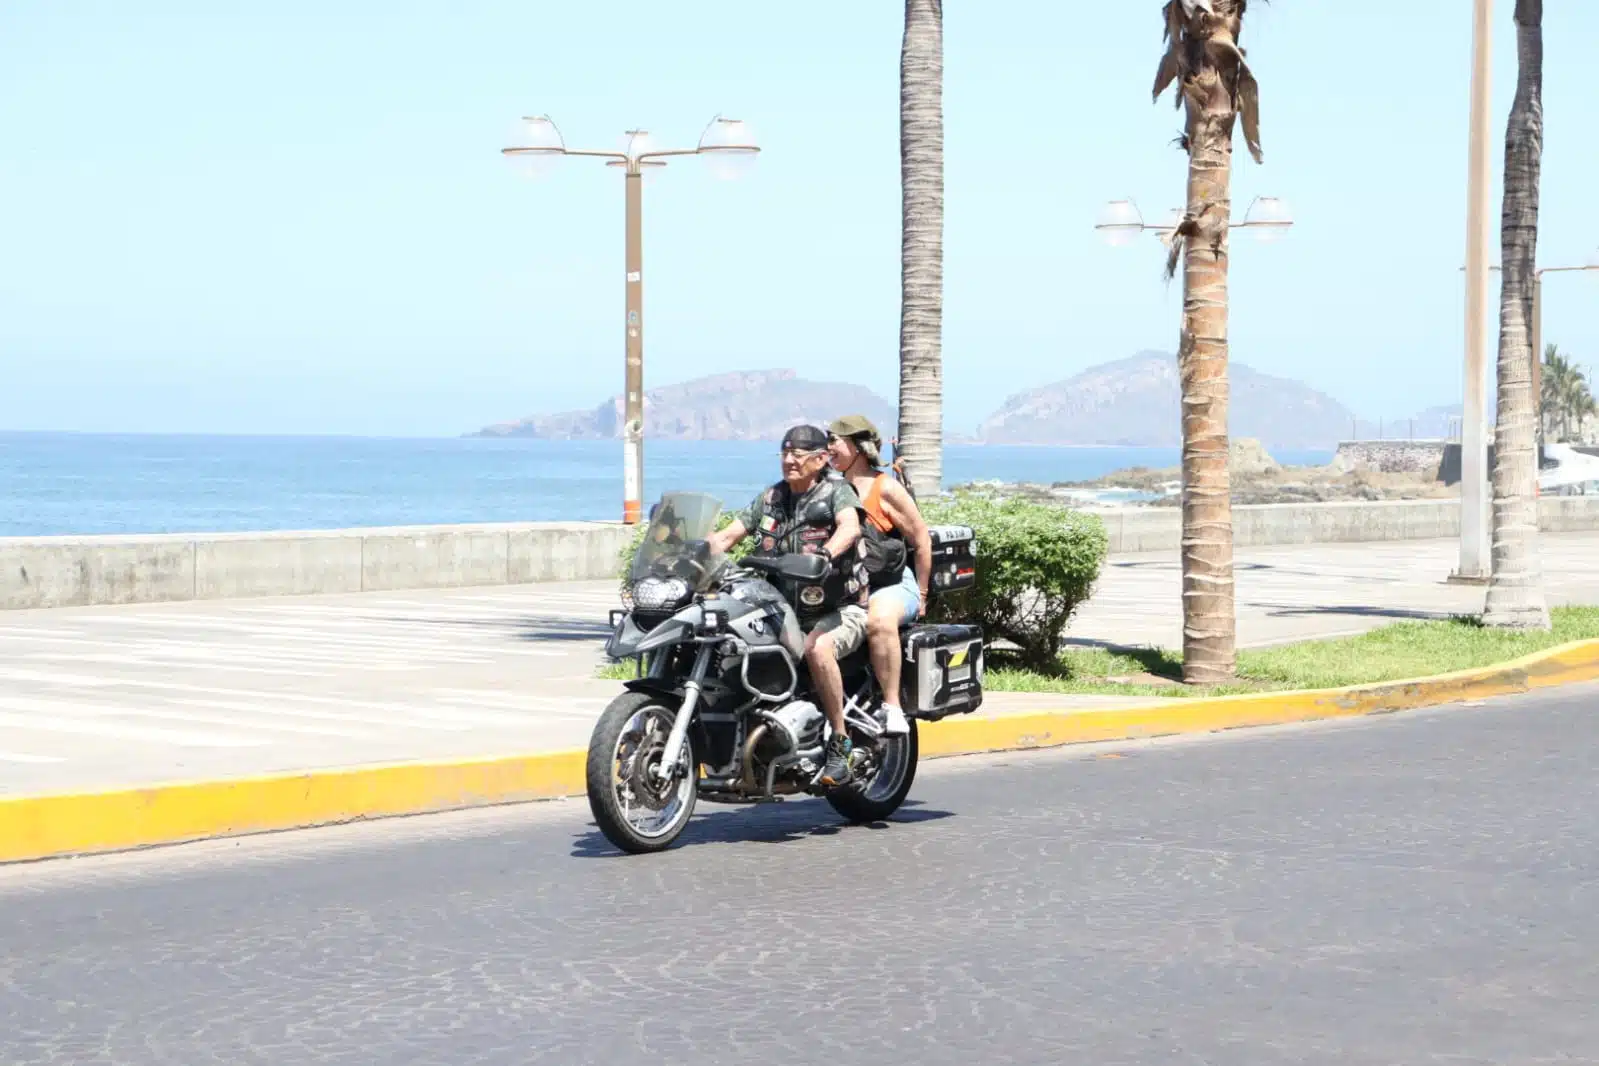 Motociclistas conduciendo sin casco en Mazatlán